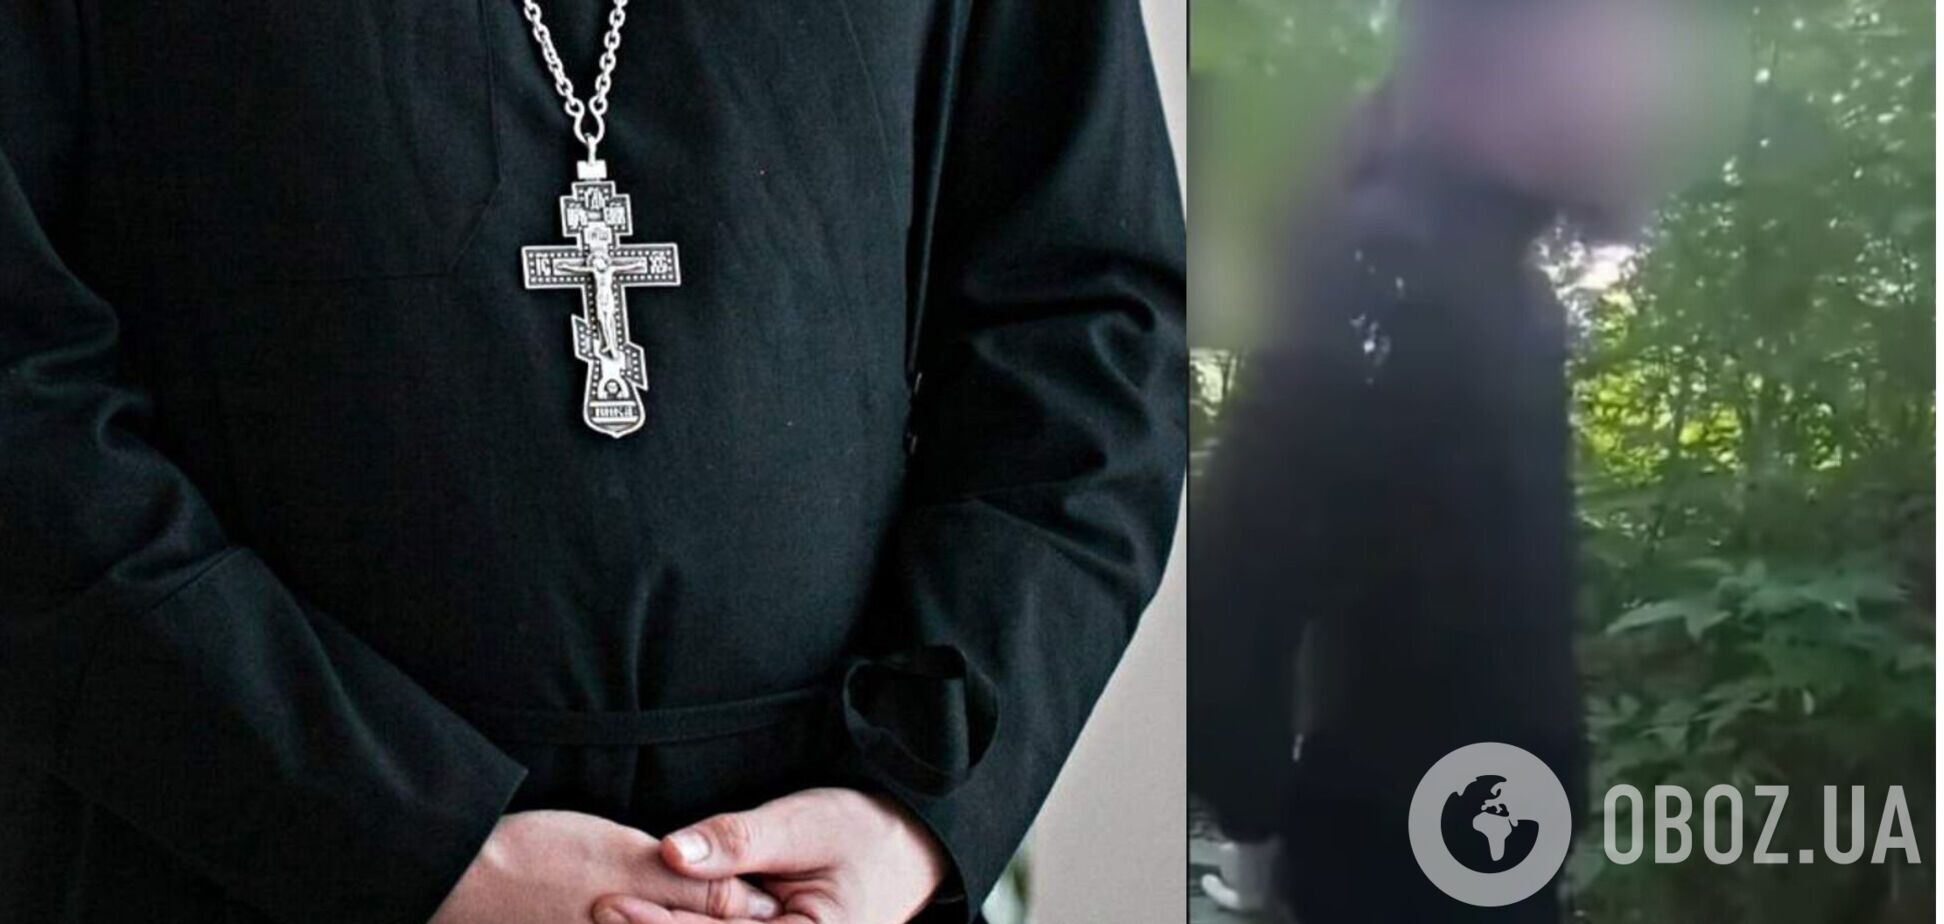 Под Луцком полиция задержала священника УПЦ МП в женской одежде: в епархии 'отреклись' от него